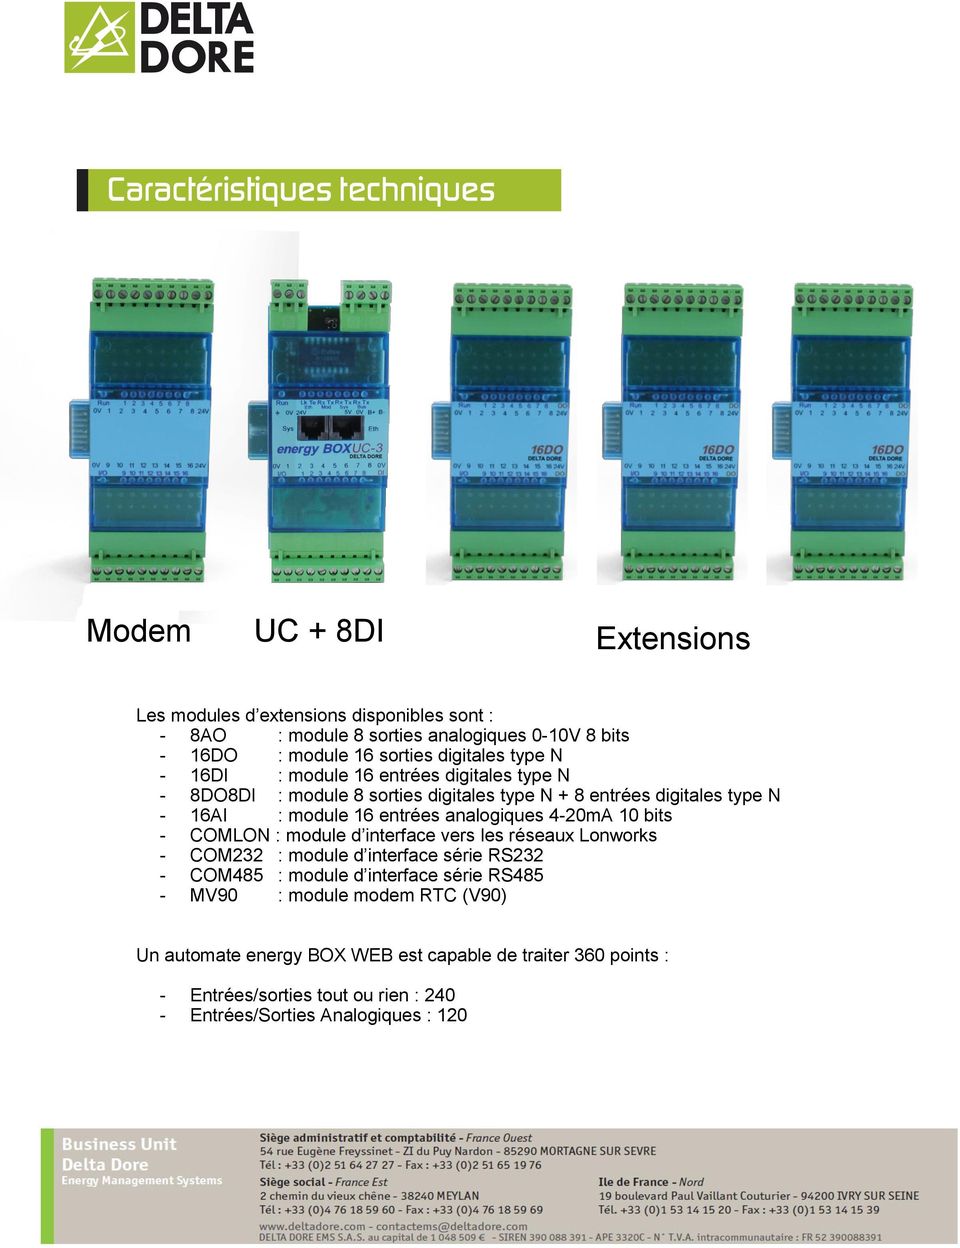 analogiques 4-20mA 10 bits - COMLON : module d interface vers les réseaux Lonworks - COM232 : module d interface série RS232 - COM485 : module d interface série